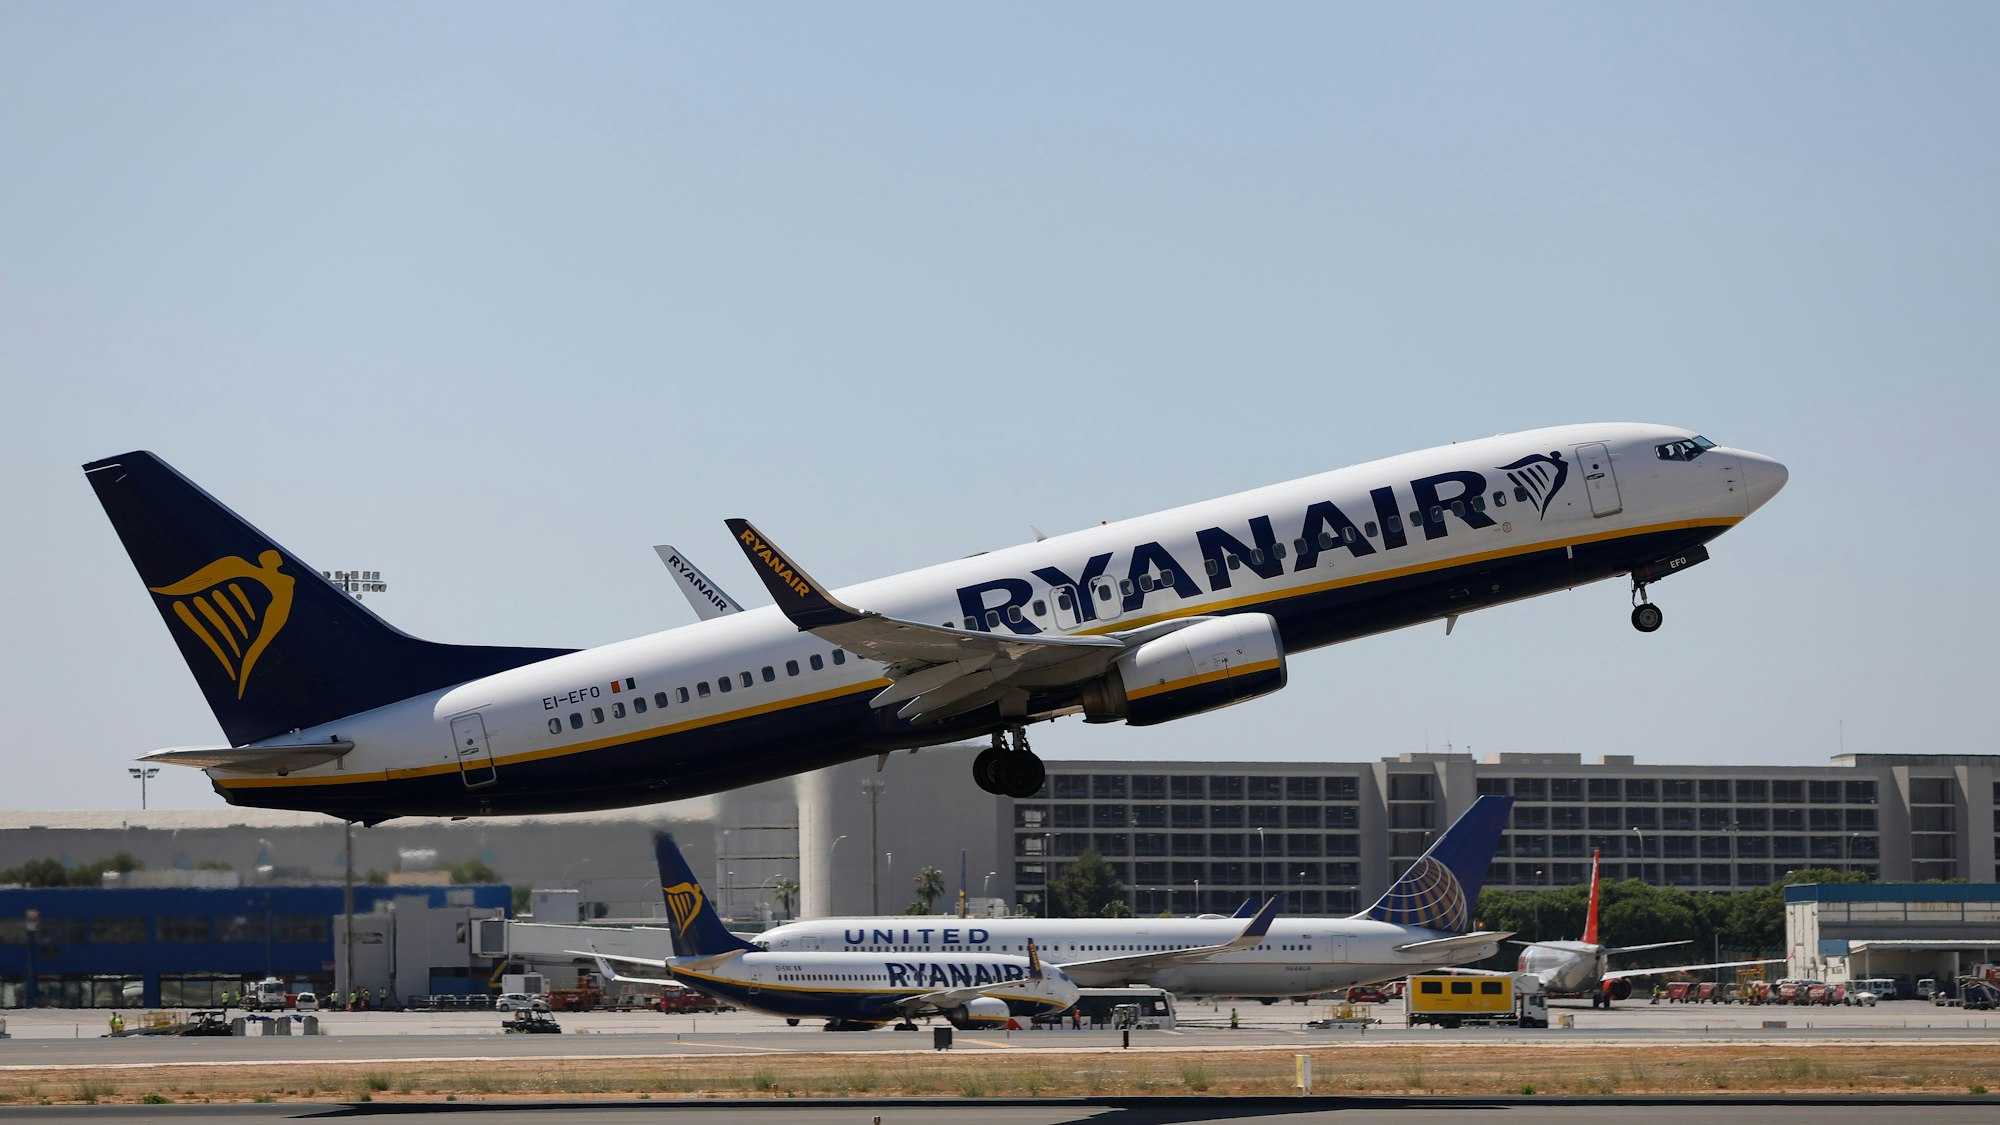 Eine Maschine der Fluggesellschaft Ryanair hebt auf demFlughafen ab.